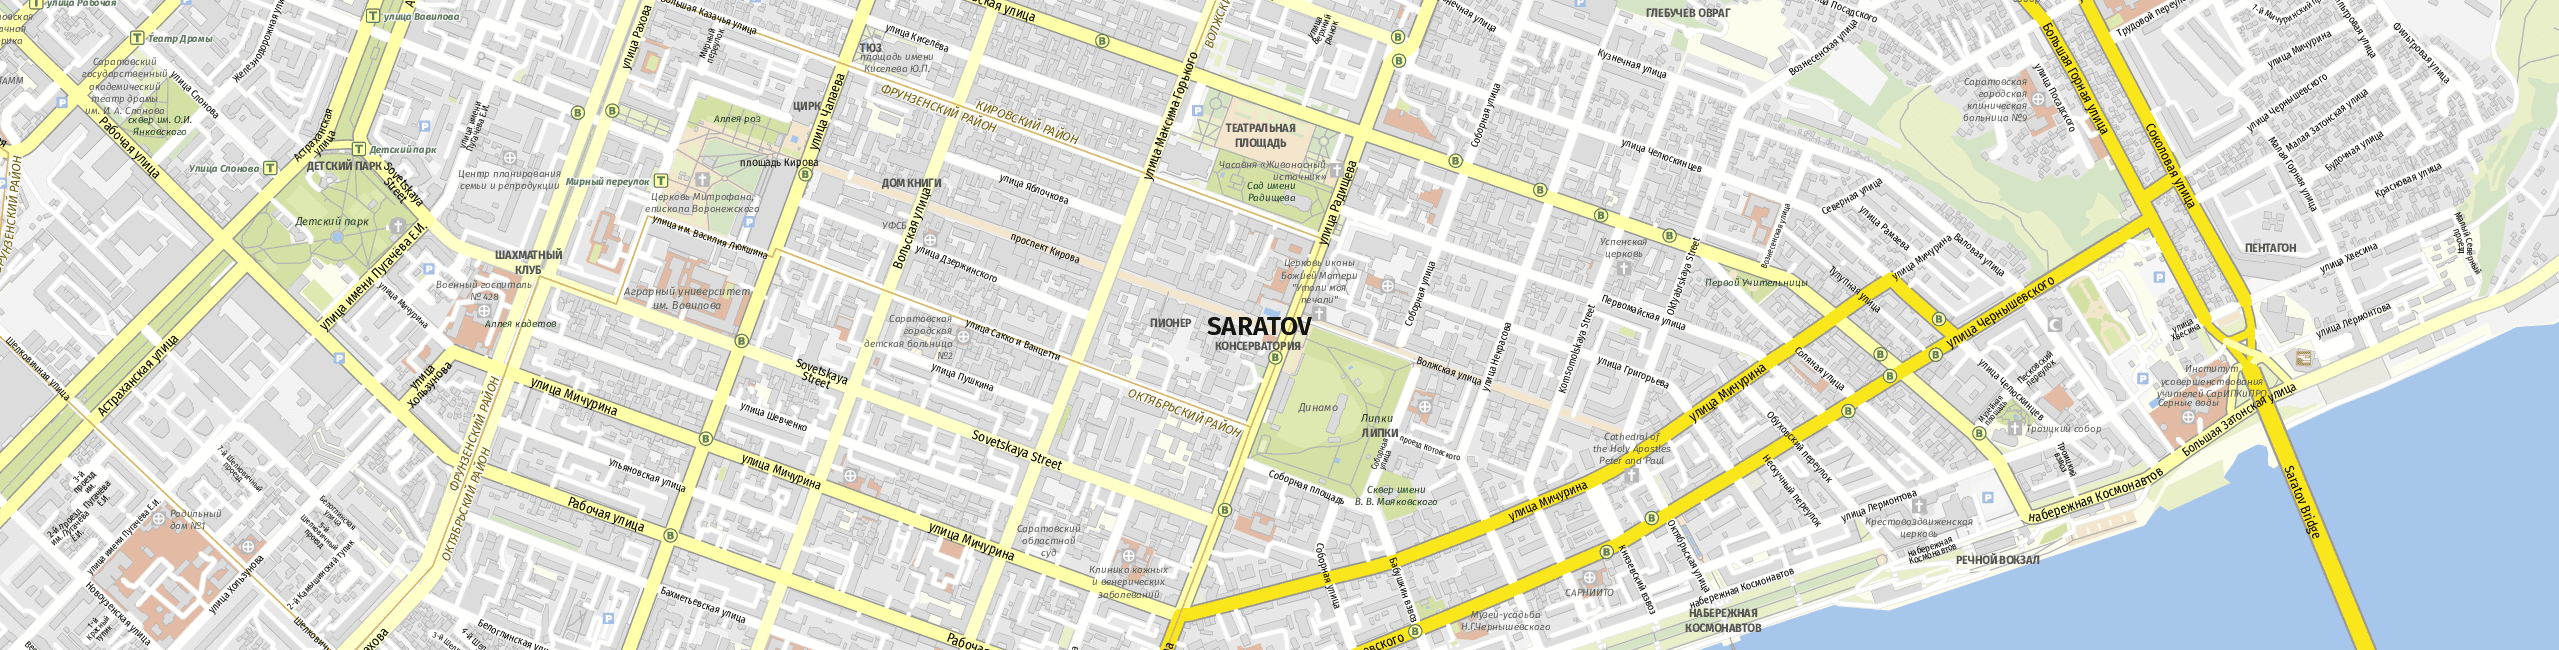 Stadtplan Saratow zum Downloaden.